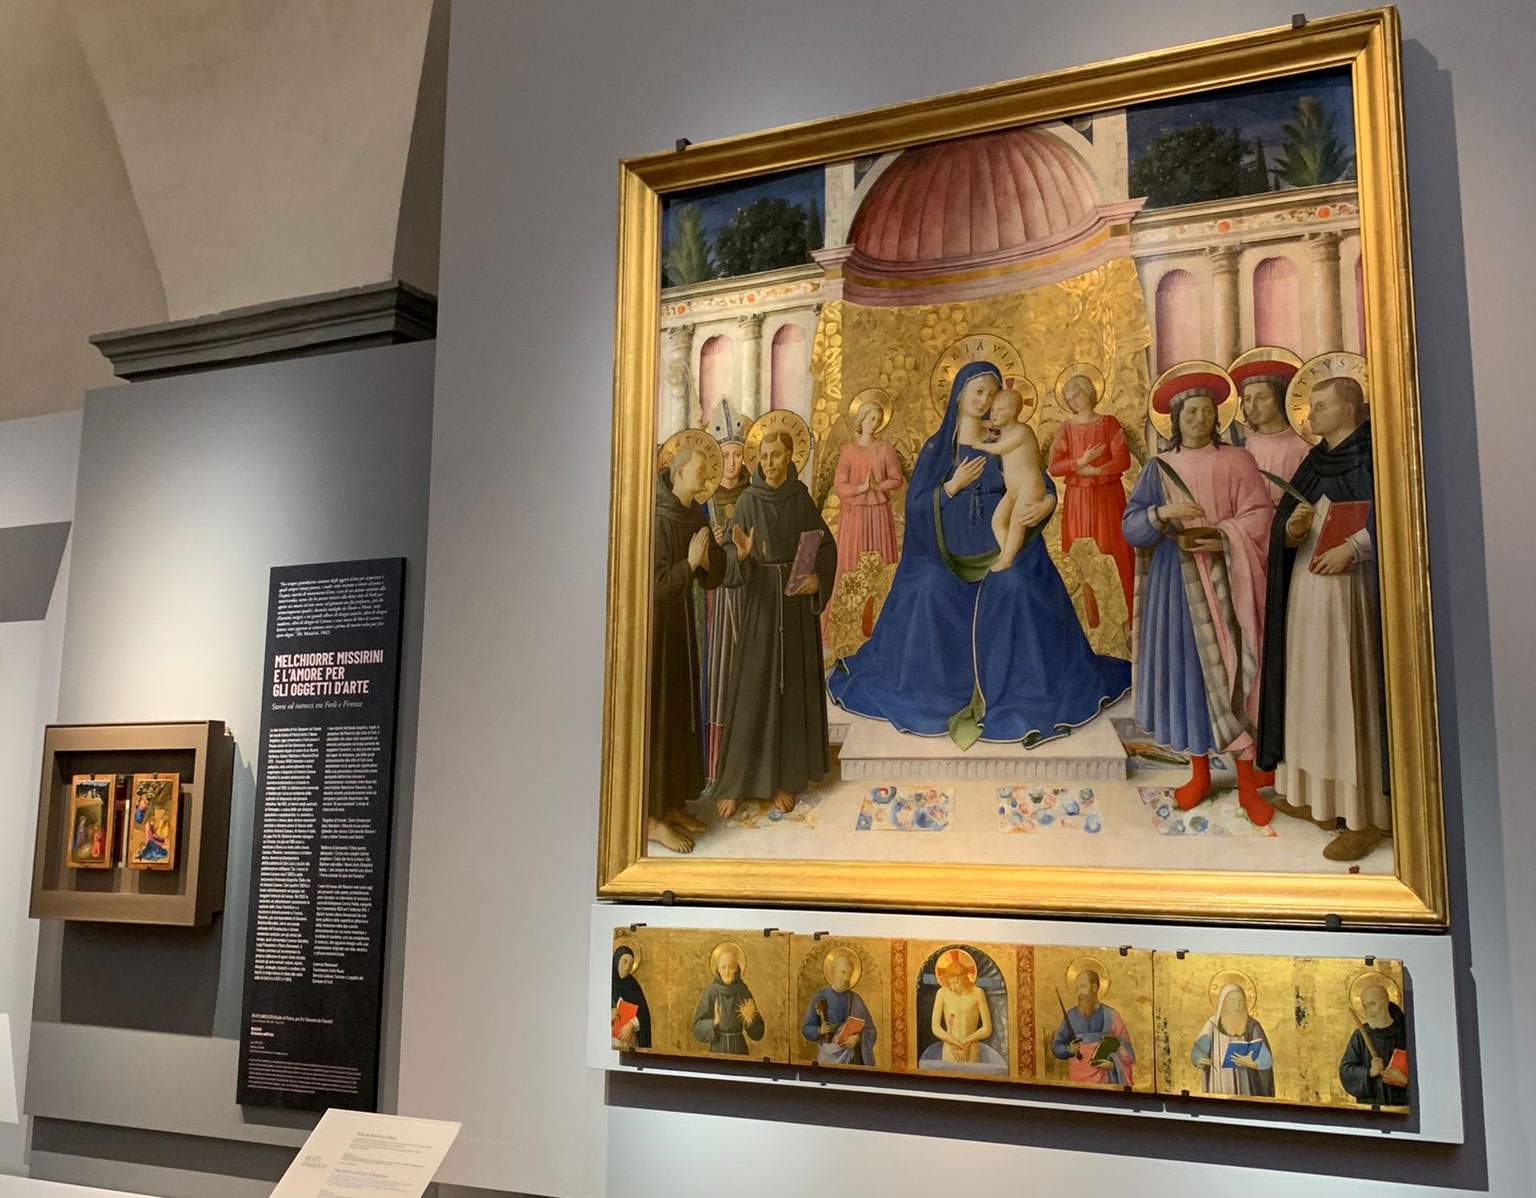 La restauration du retable du Bosco ai frati, chef-d'œuvre de Fra Angelico, est achevée.